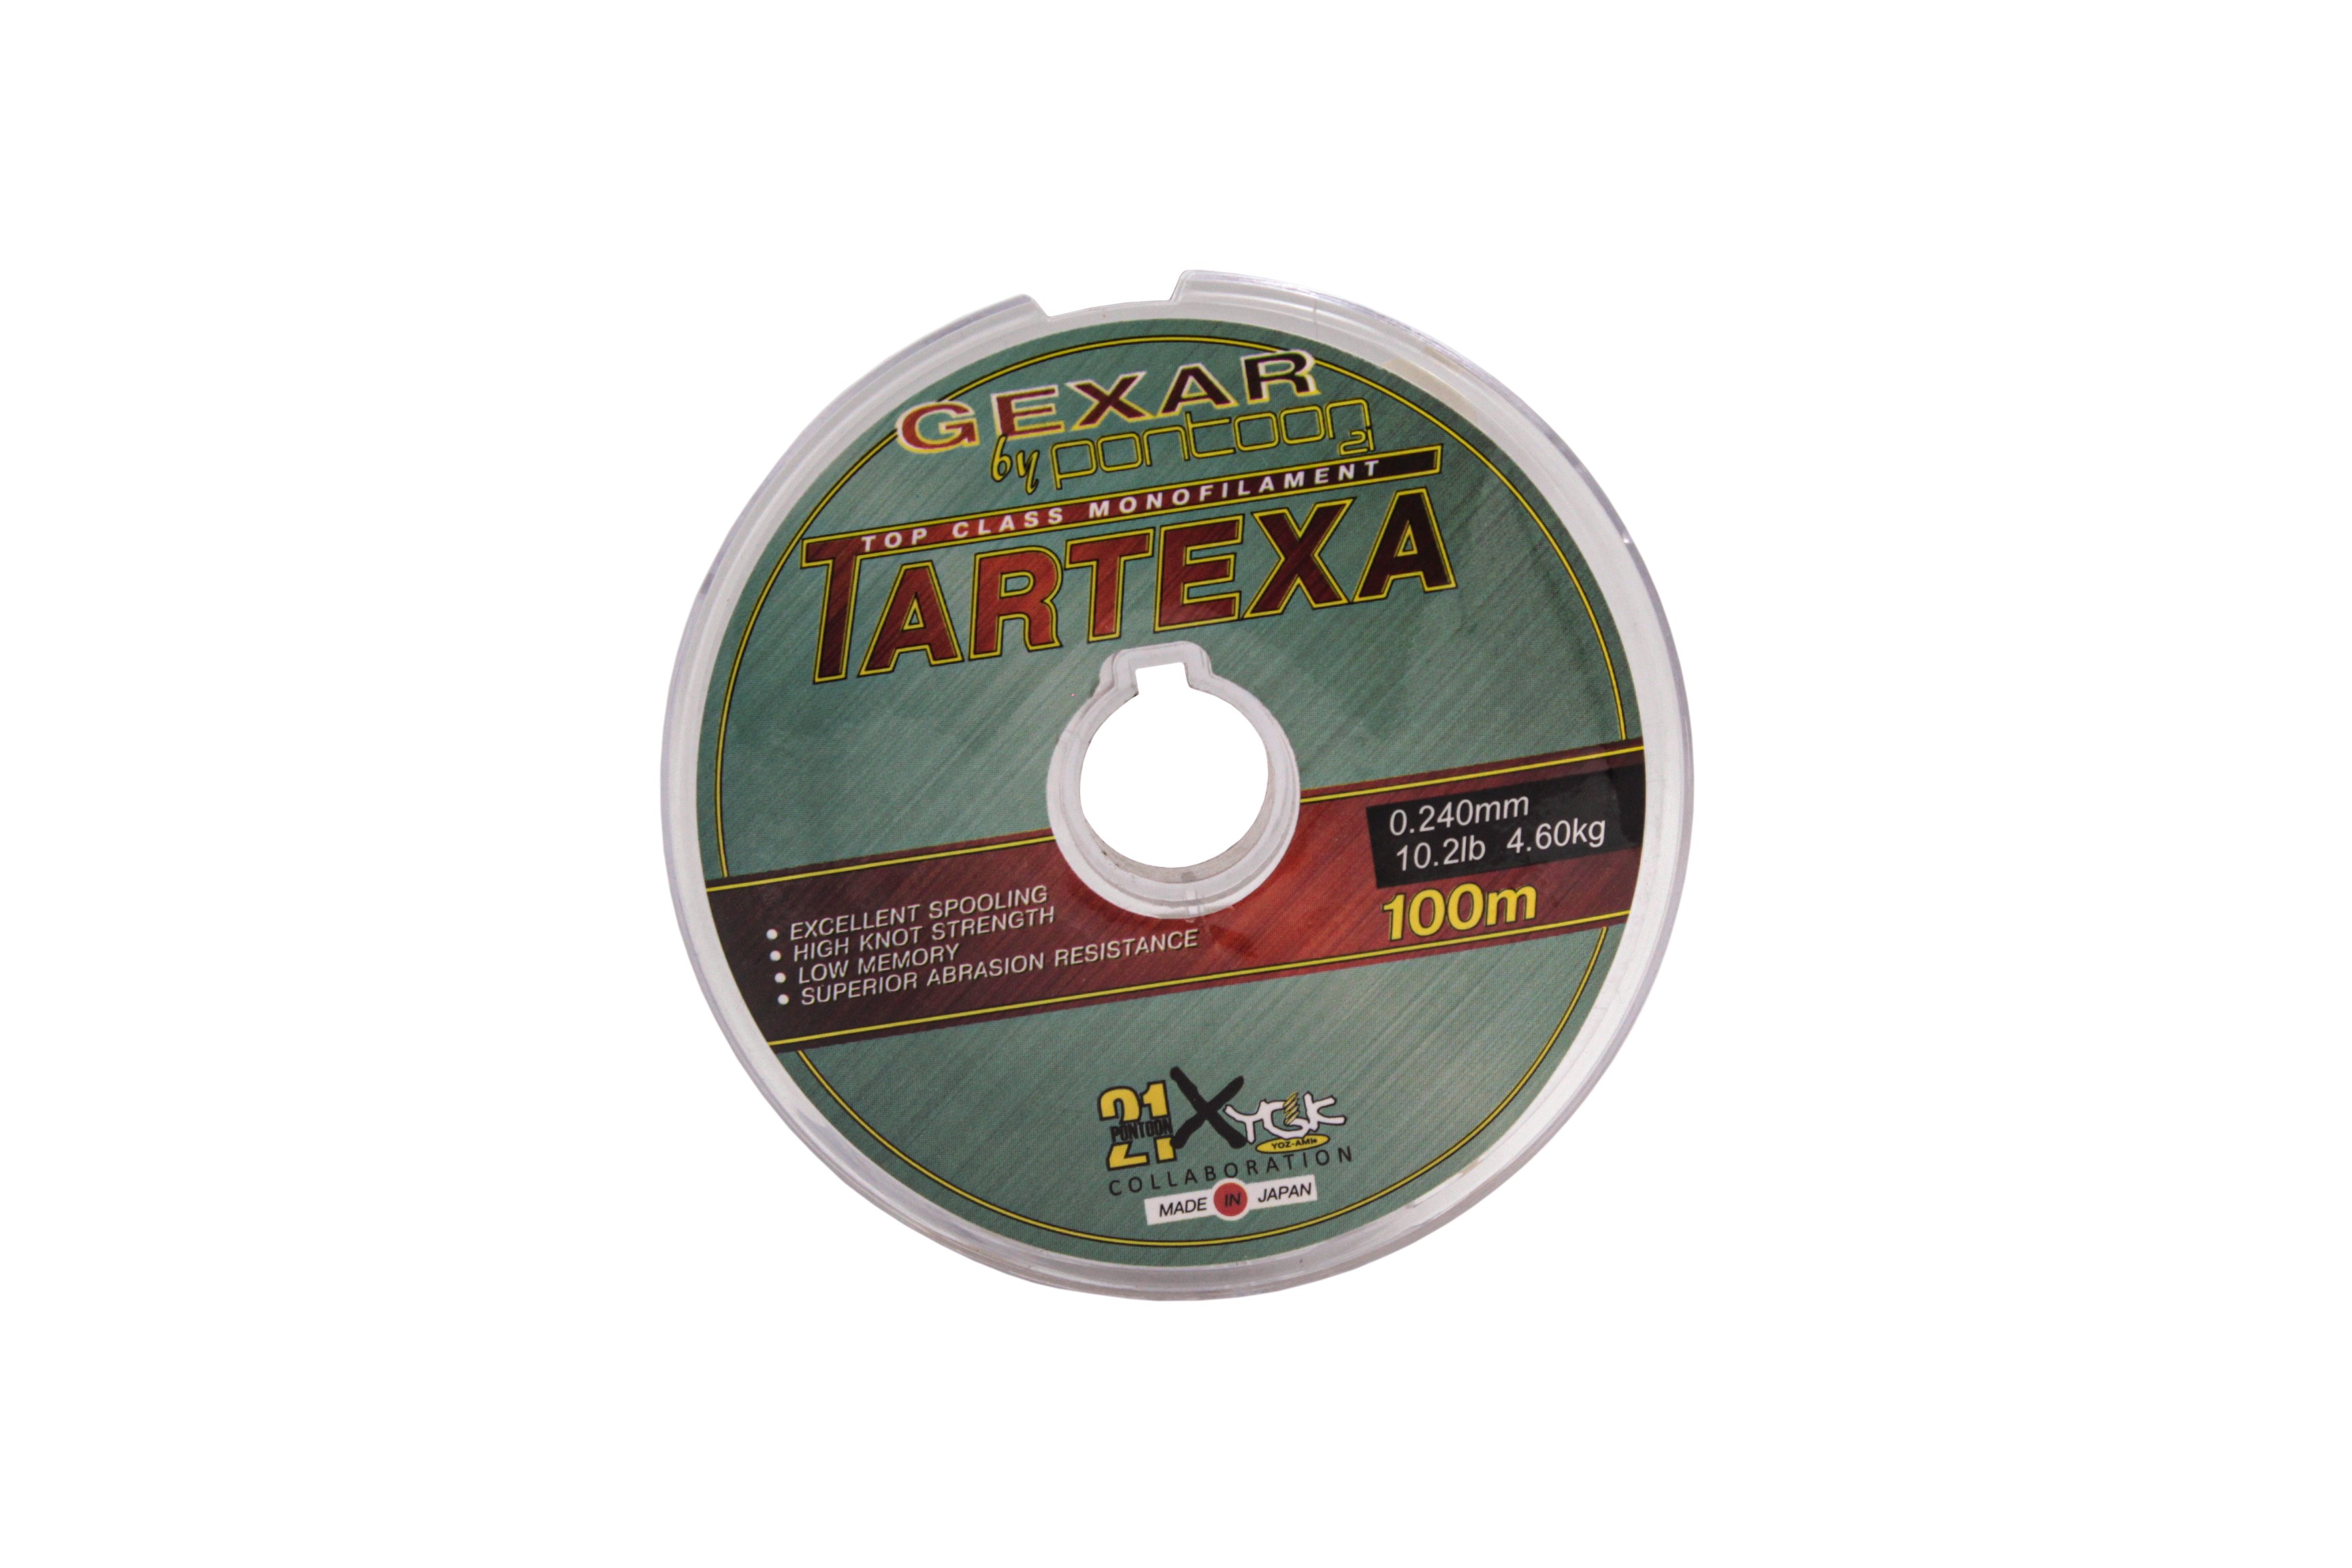 Леска Pontoon21 Gexar Tartexa 0.24мм 10.2lb 4.6кг светло-серая - фото 1